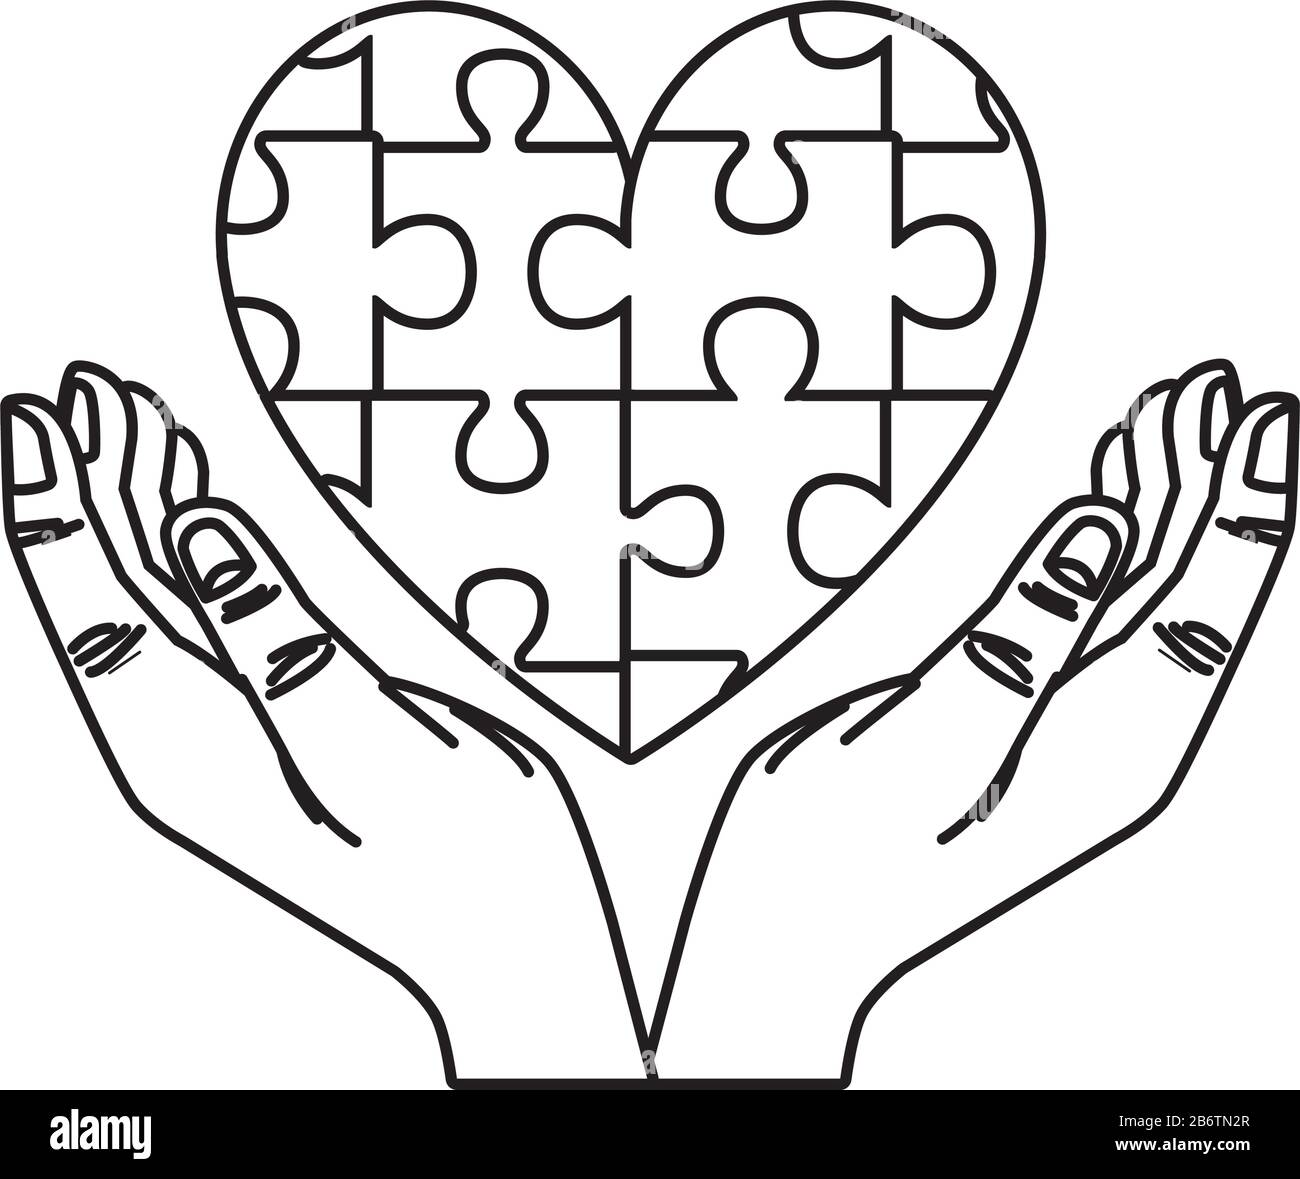 mani umane con pezzi di puzzle cuore Immagine e Vettoriale - Alamy